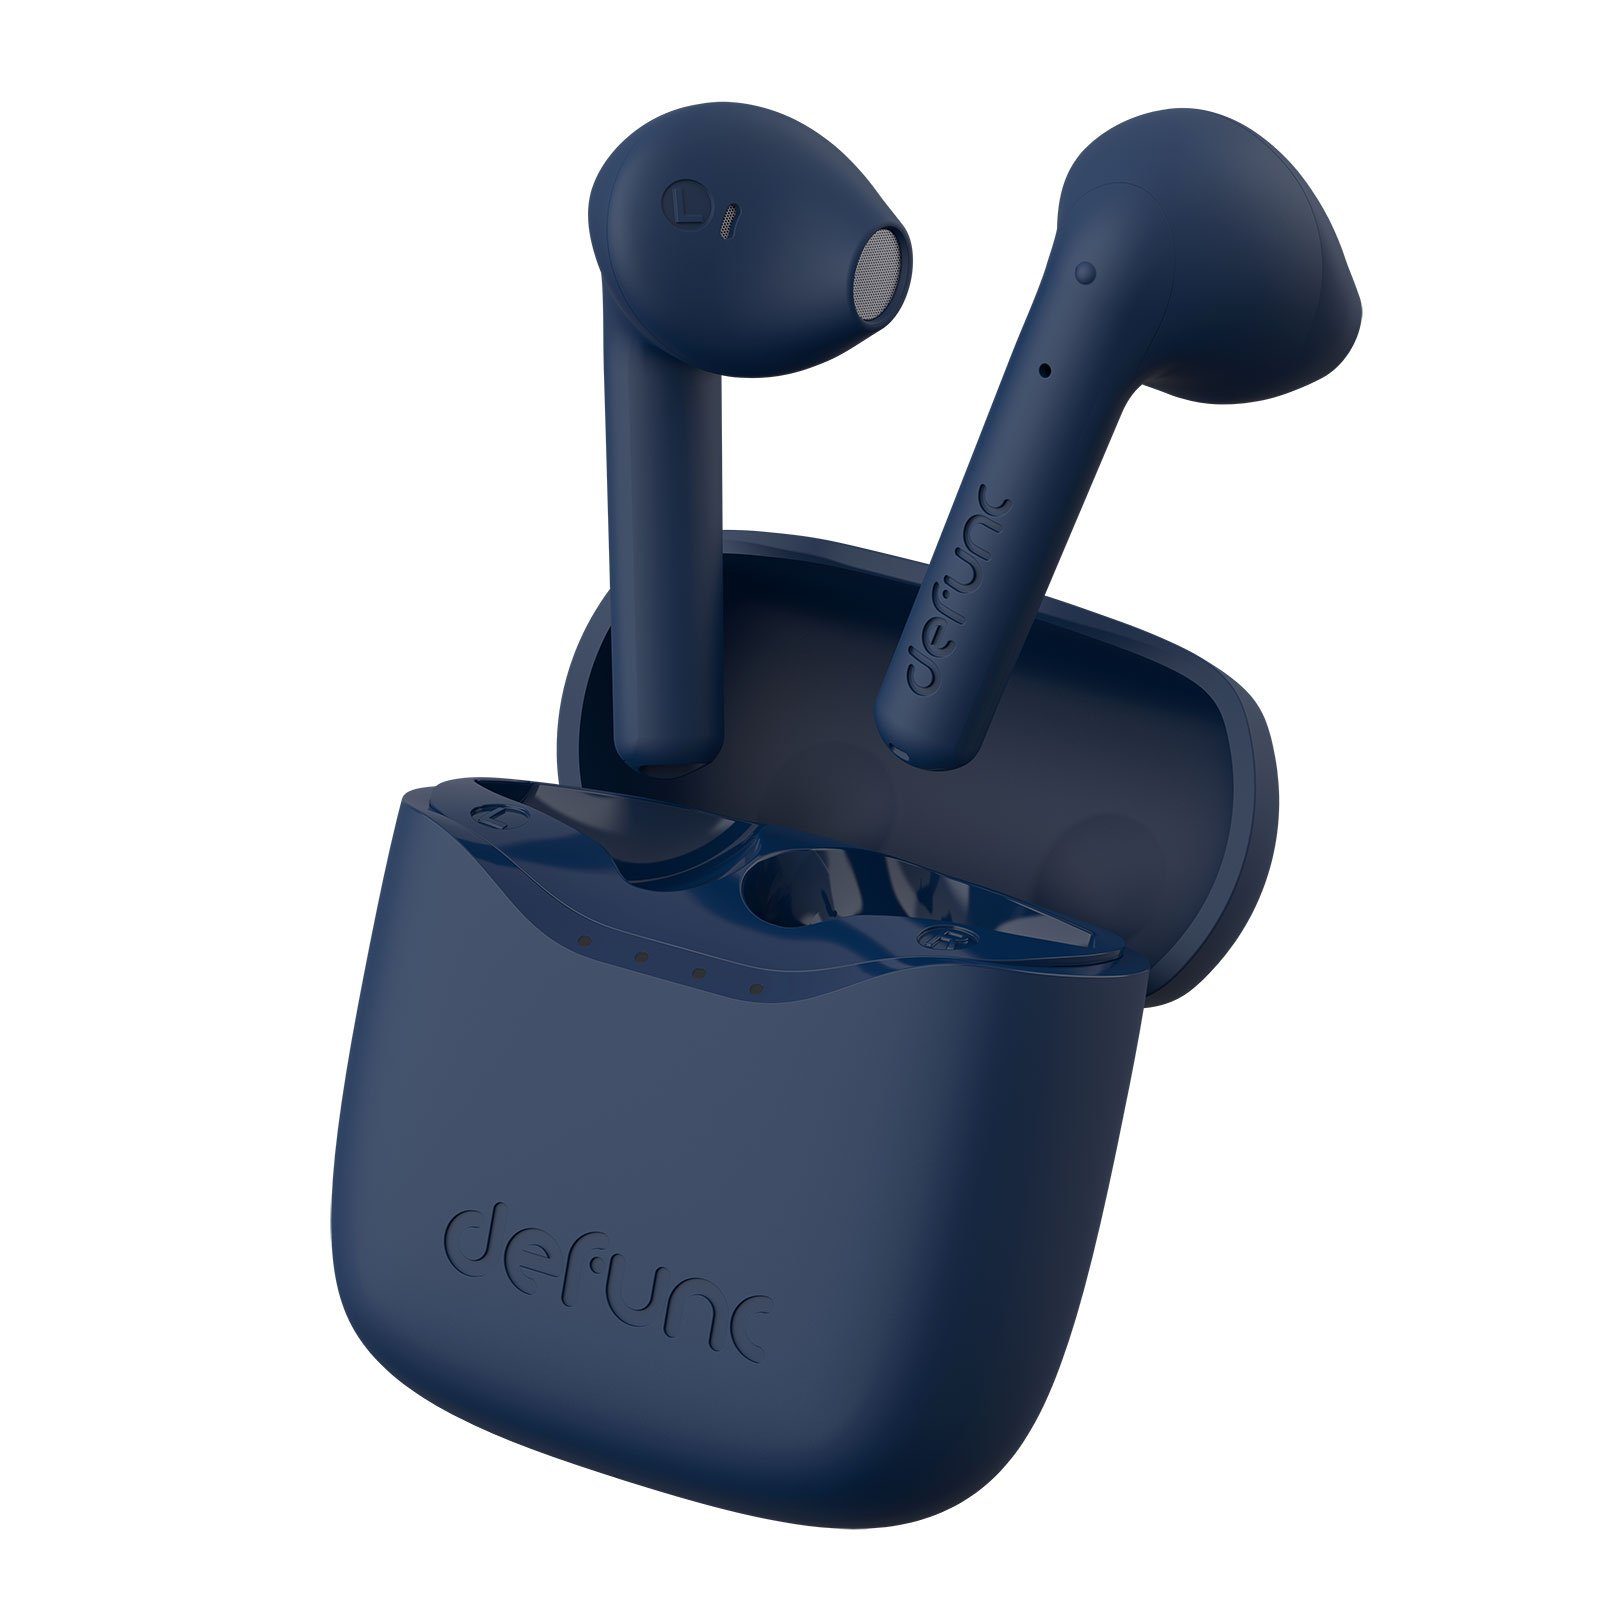 In-Ear-Kopfhörer Defunc Defunc Lite Blau True wireless